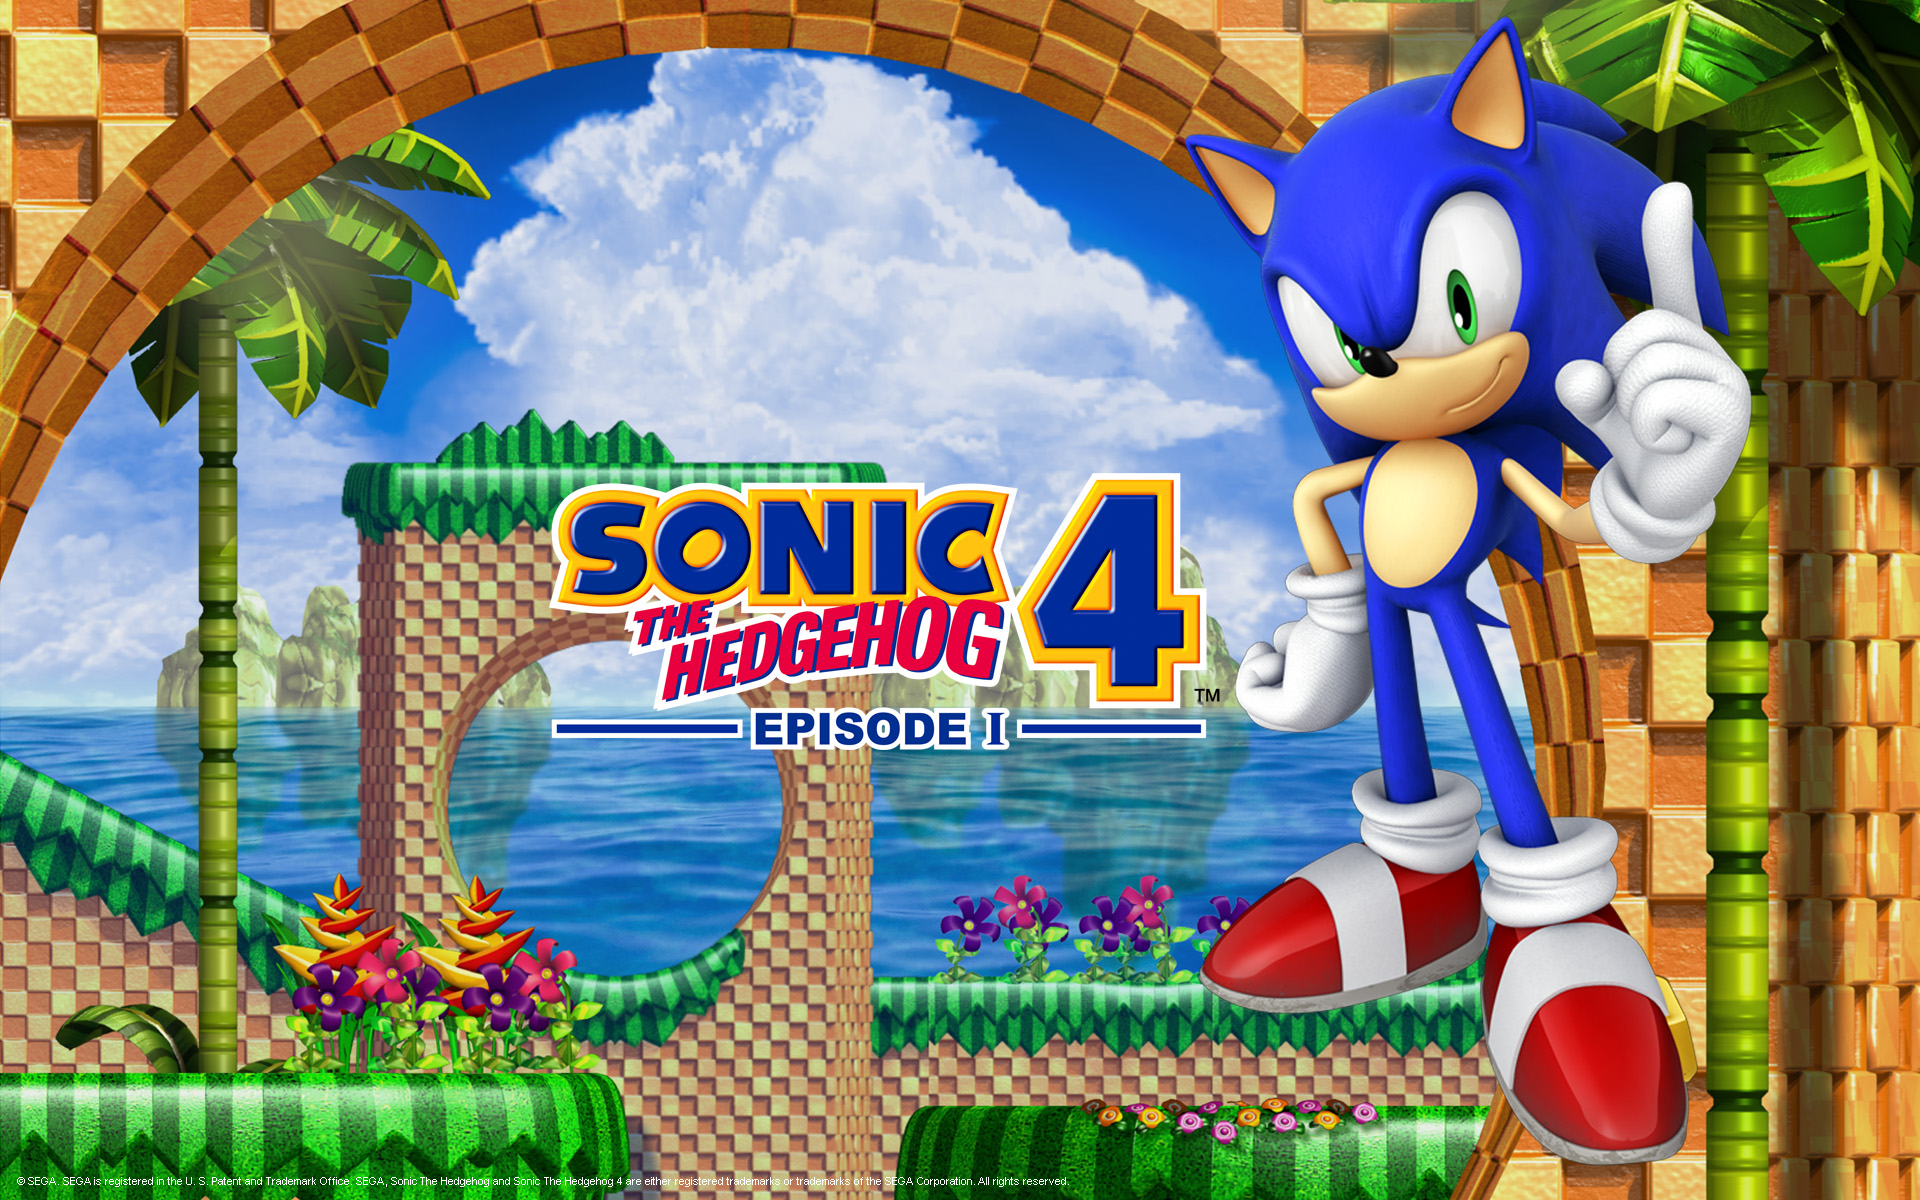 Sonic the Hedgehog 4 Episode I (English) WiiWare WAD NostalgiaLand